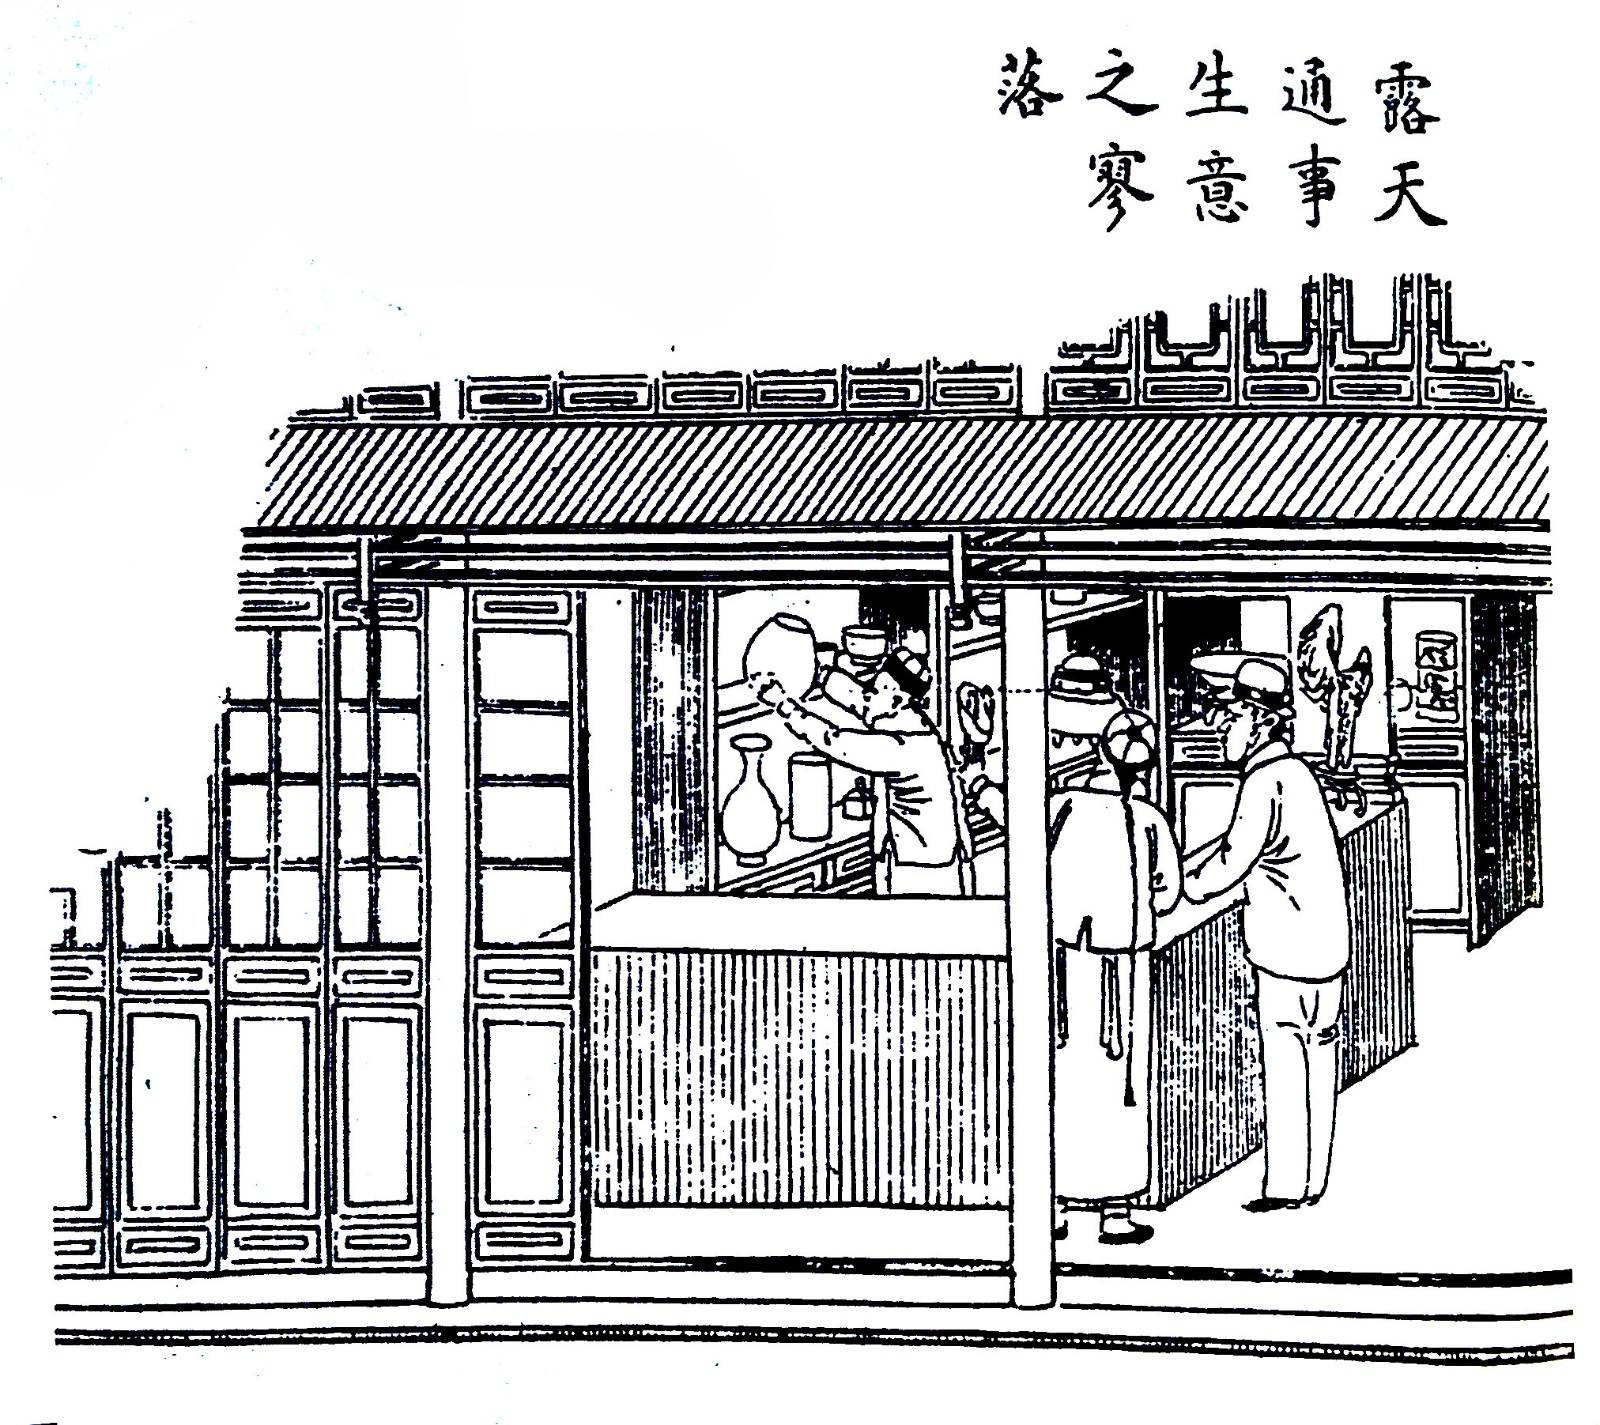 《沪游杂记》中描绘的露天通事141314.jpg